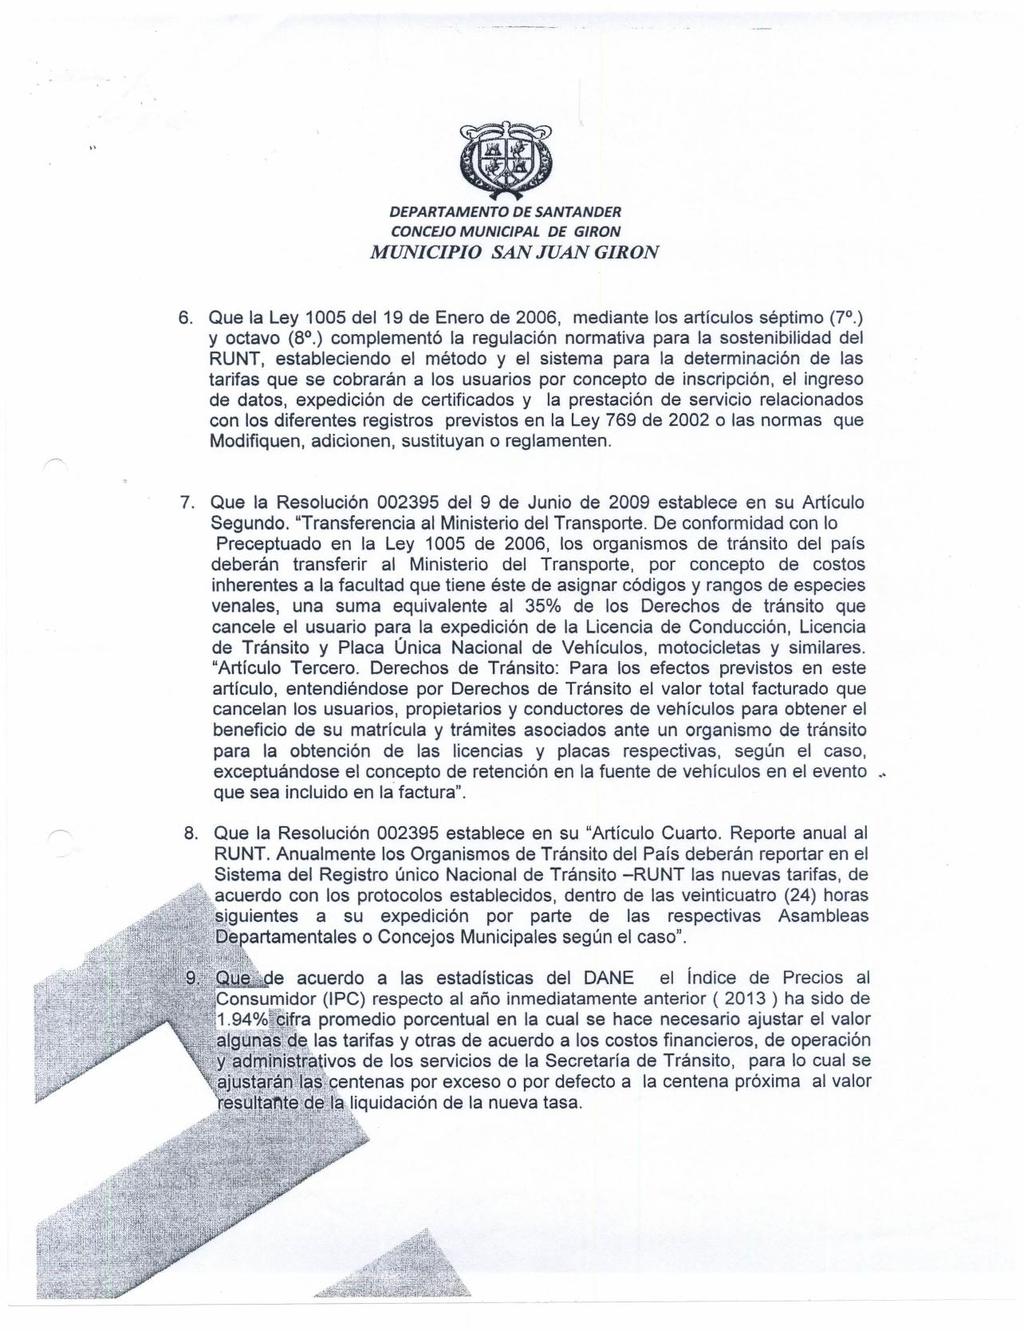 DEPARTAMENTO MUNICIPIO DE SANTANDER SAN JUAN GIRON 6. Que la Ley 1005 del 19 de Enero de 2006, mediante los artículos séptimo (7.) y octavo (8.